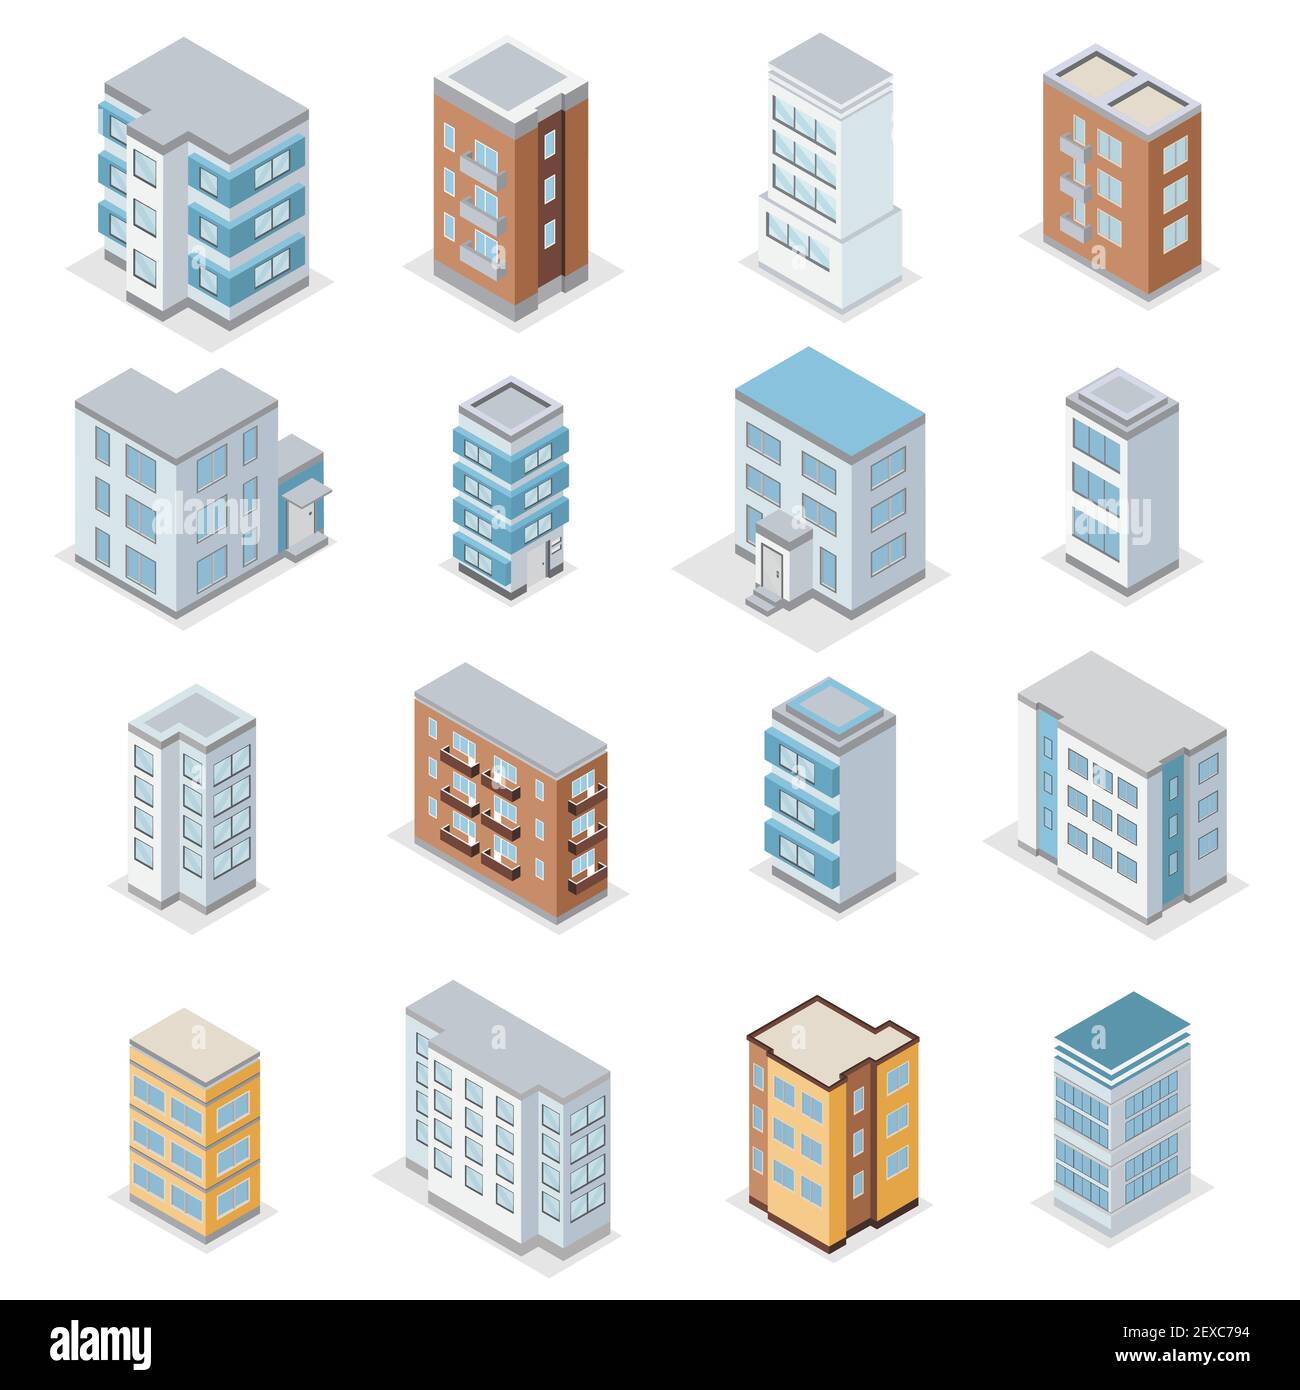 Icônes de bâtiment de maison de ville avec paysage urbain isométrique vecteur isolé illustration Illustration de Vecteur